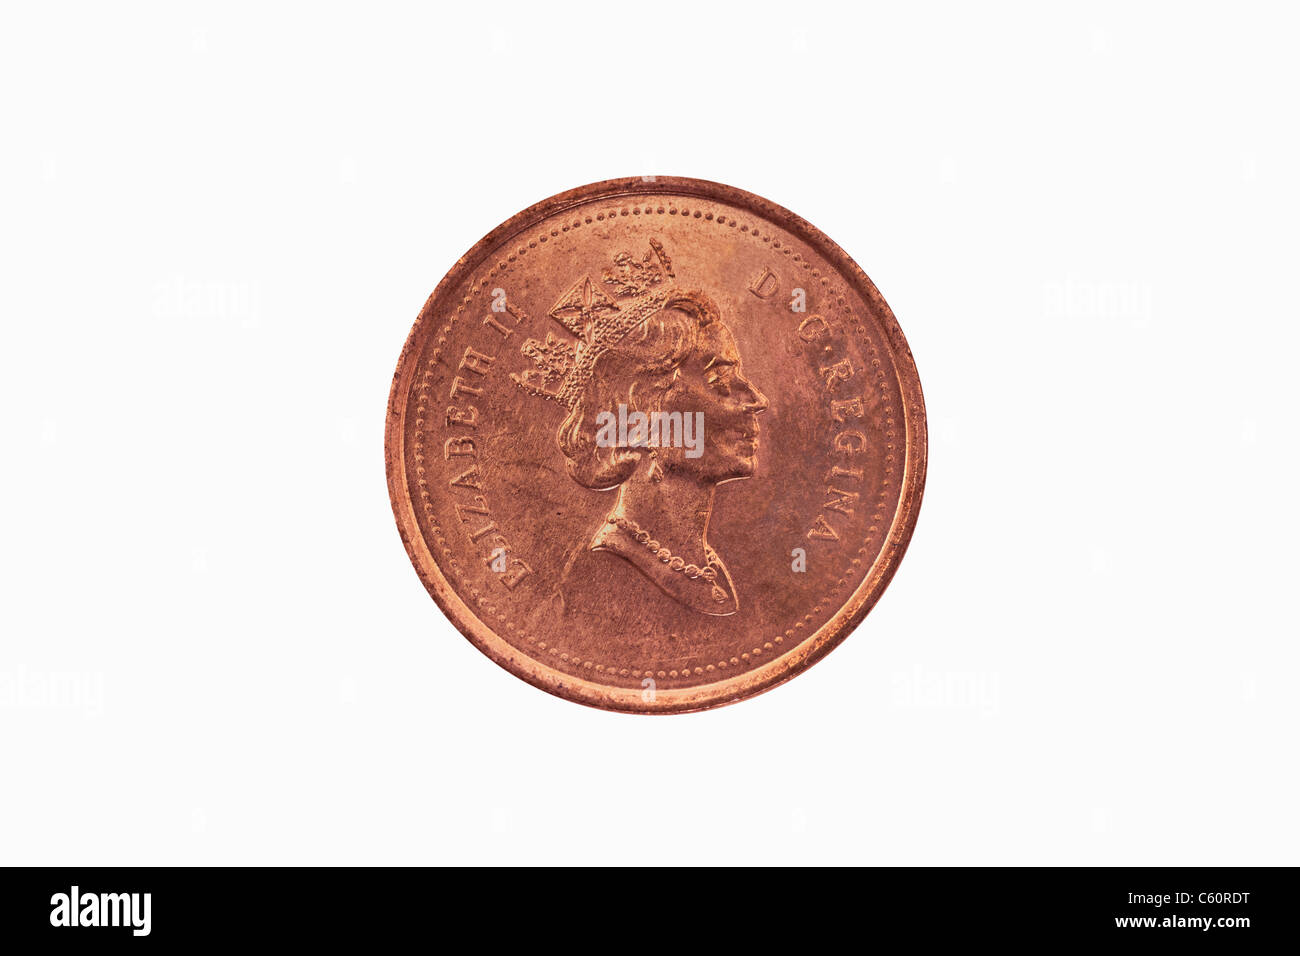 Detailansicht einer kanadischen 1 100 Münze aus dem Jahr 1997 | photo de détail un 1 cents du Canada à partir de l'année 1997 Banque D'Images